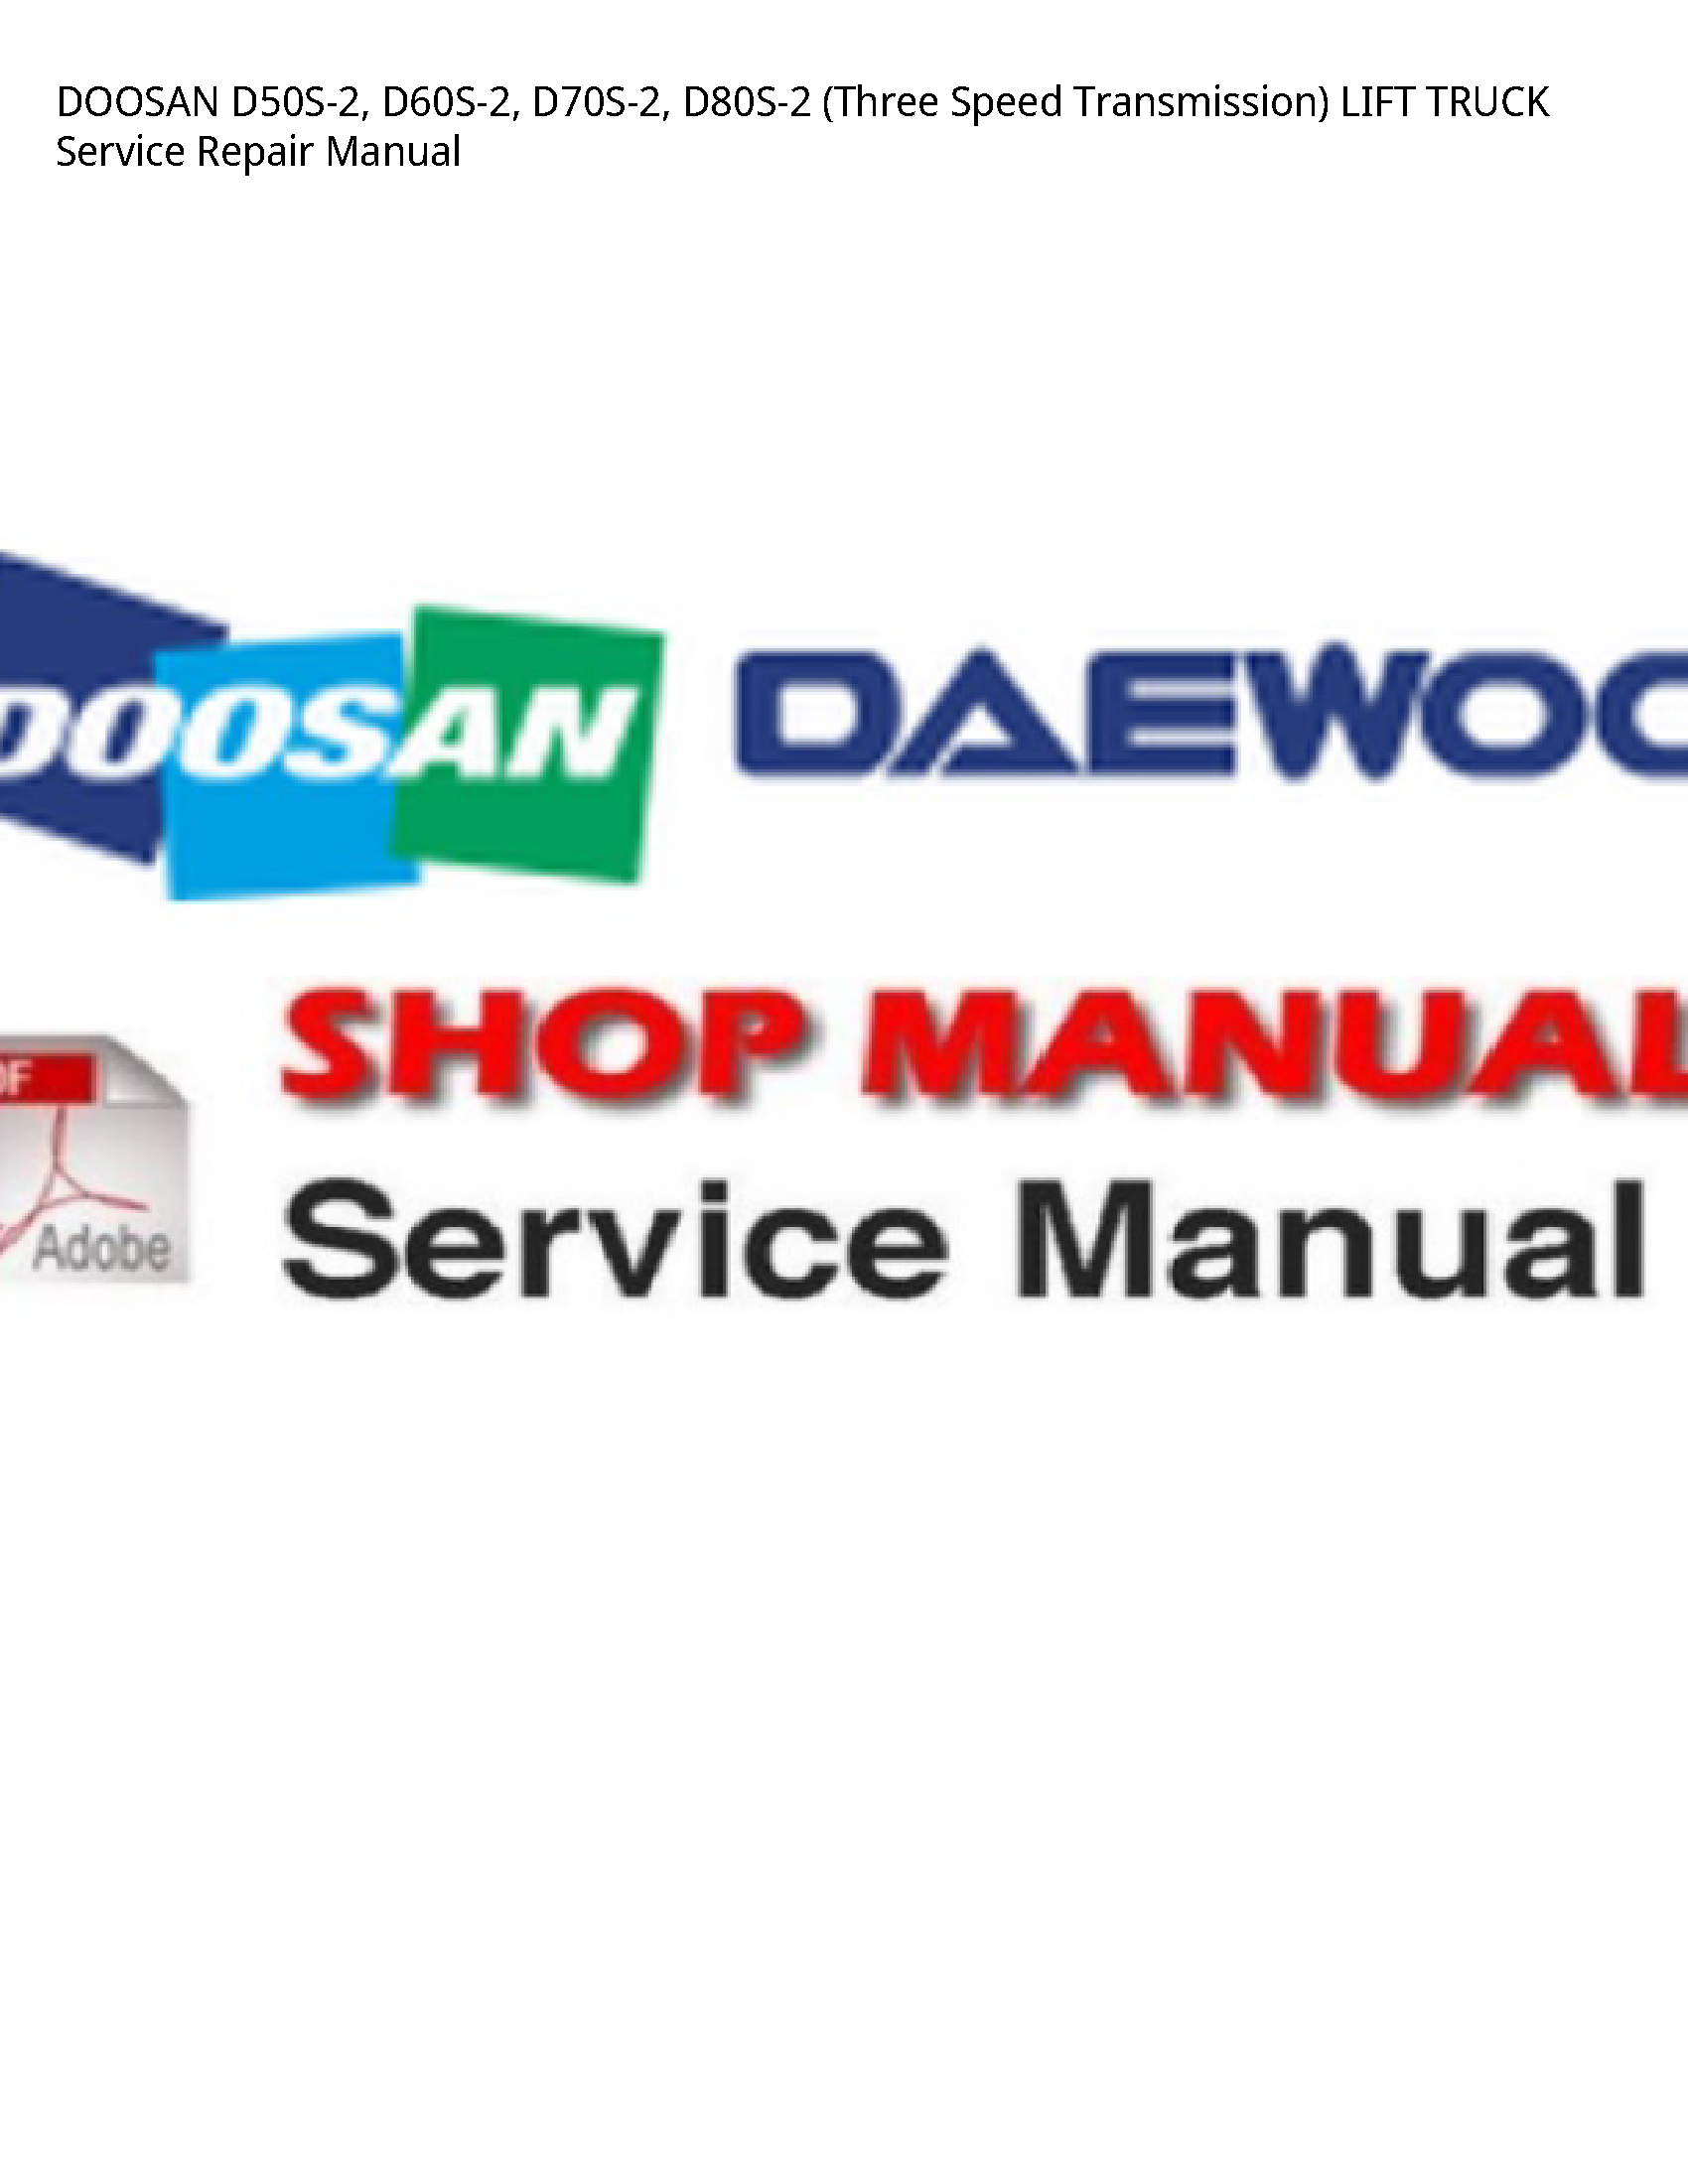 Doosan D50S-2 (Three Speed Transmission) LIFT TRUCK manual